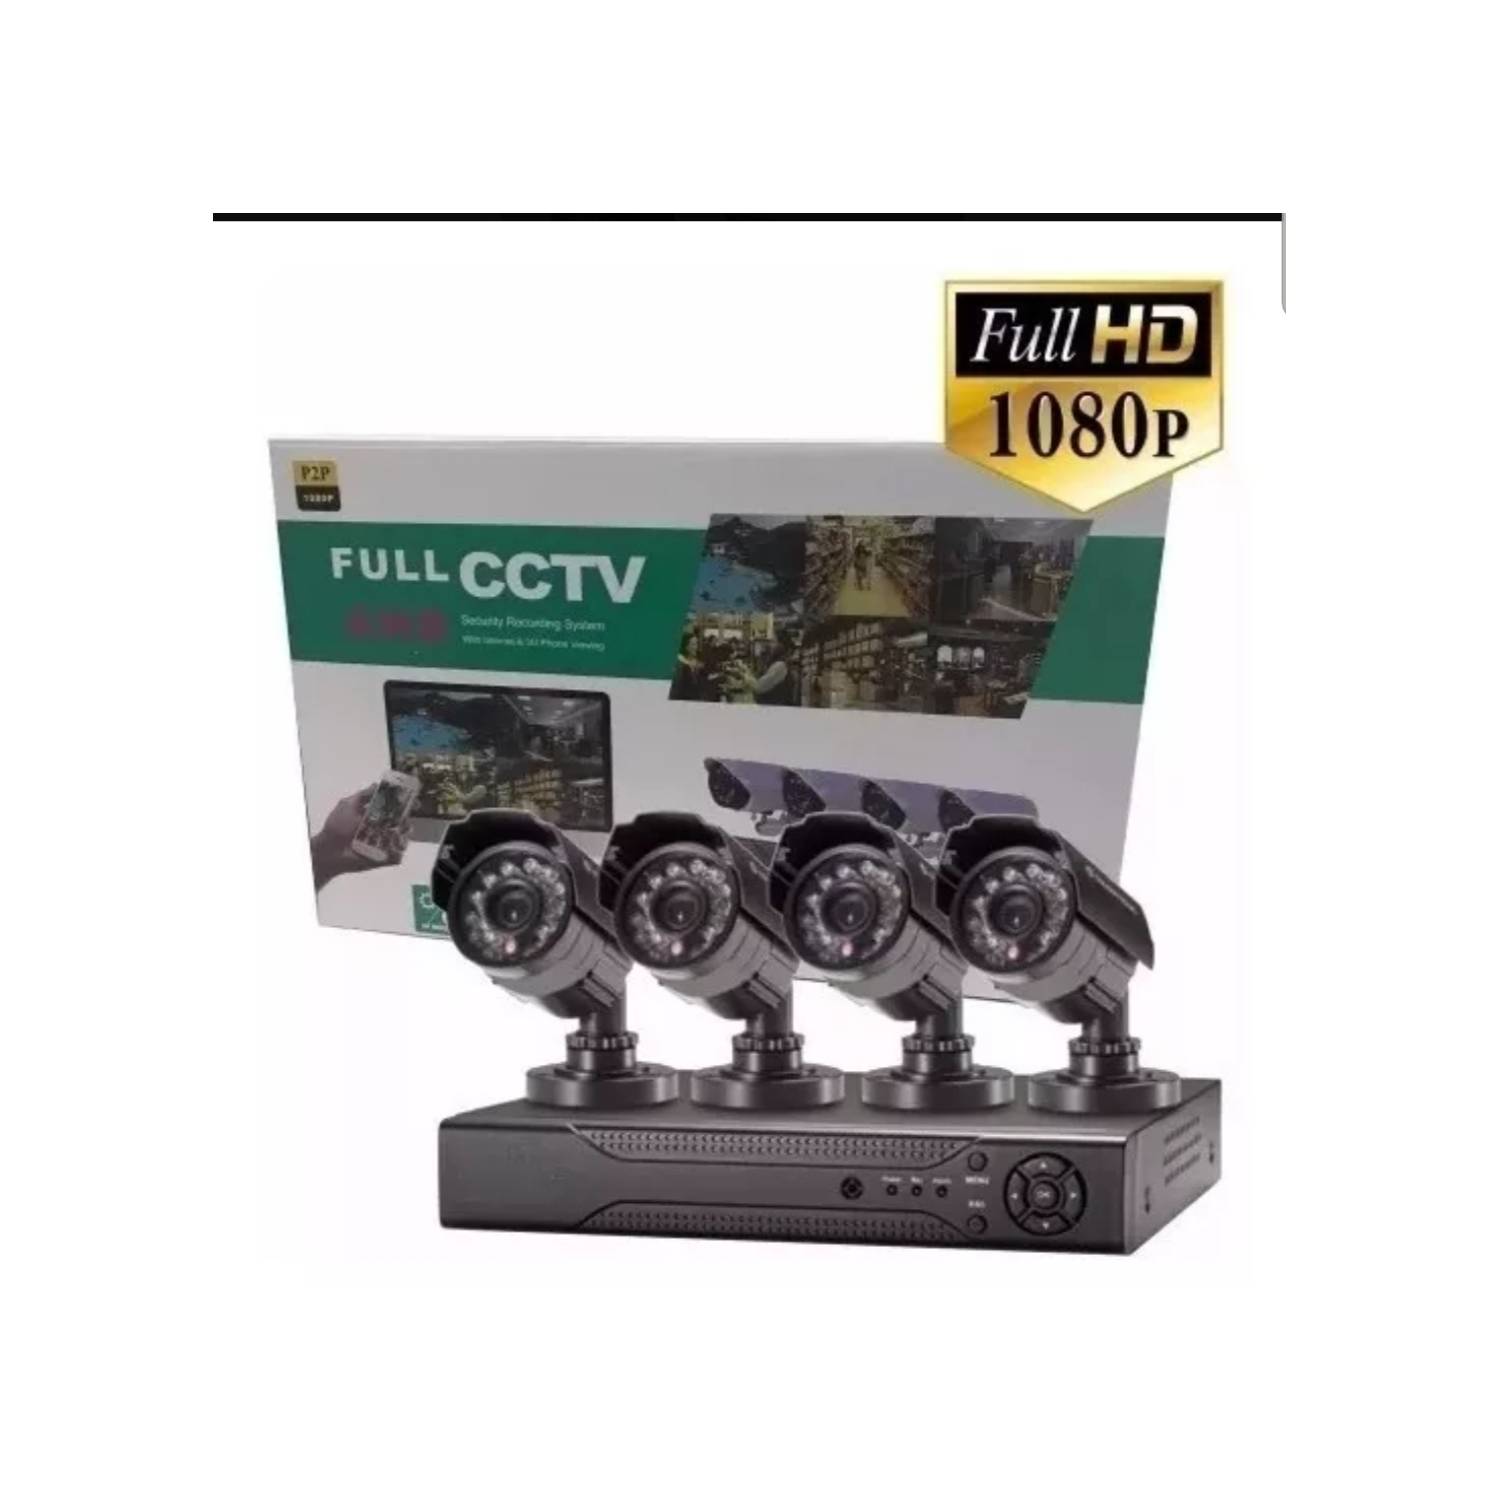 Nabo Cambiarse de ropa Chillido CCTV Kit Cctv 4 Canales Full HD 1080p P2p Seguridad. | falabella.com